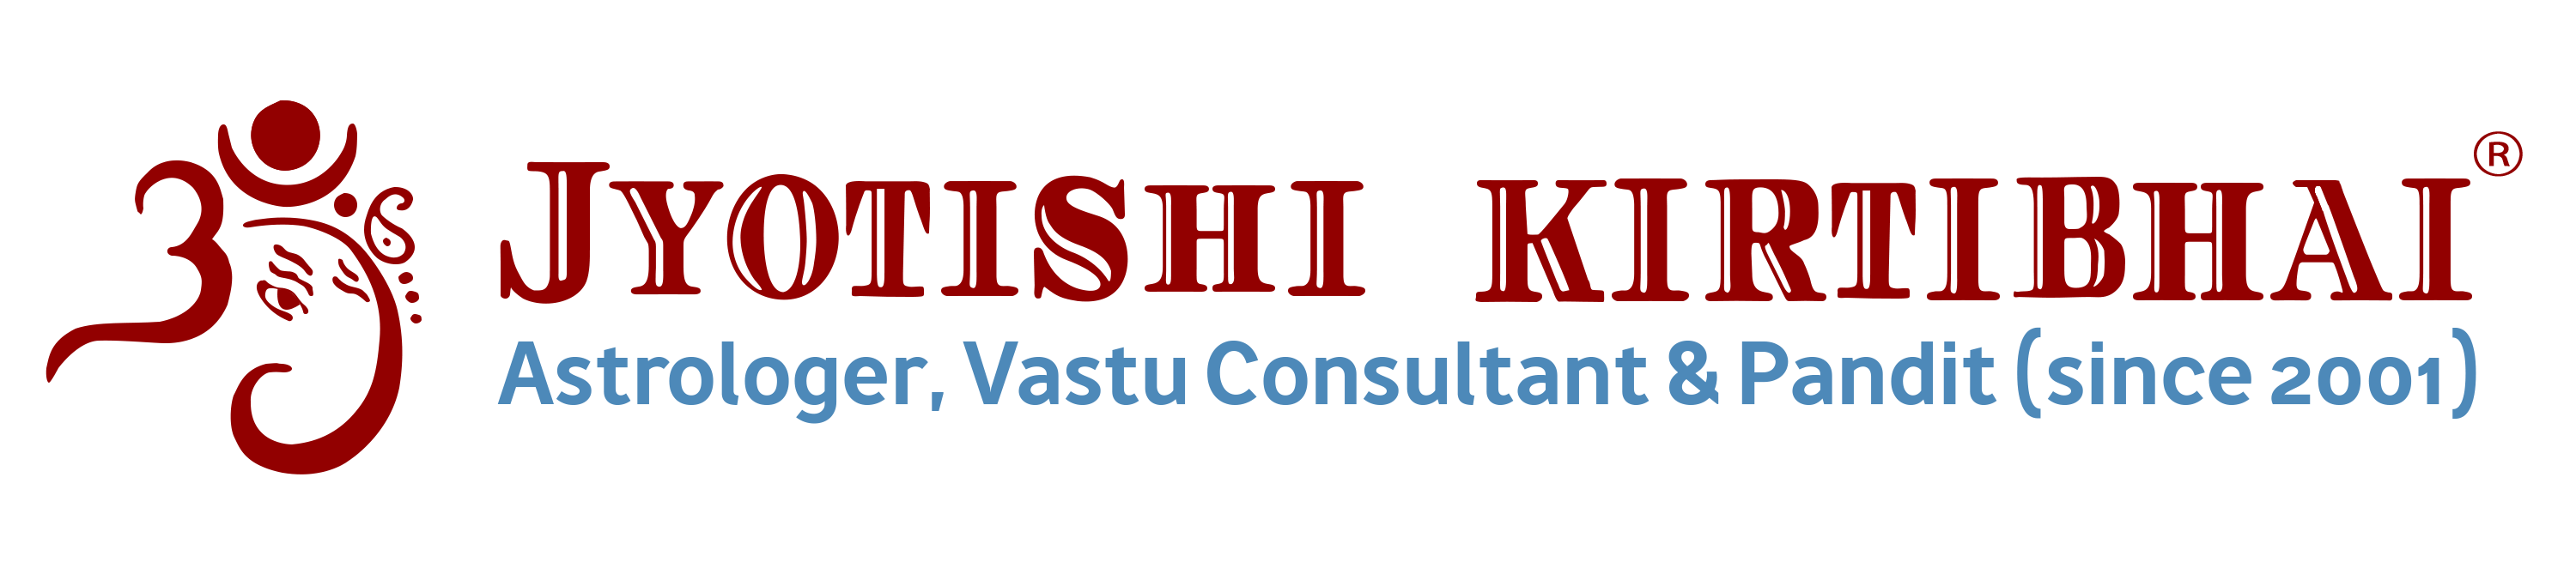 Vastu Consultant in Dubai - Astrologer Kirtibhai - Top Vastu Expert